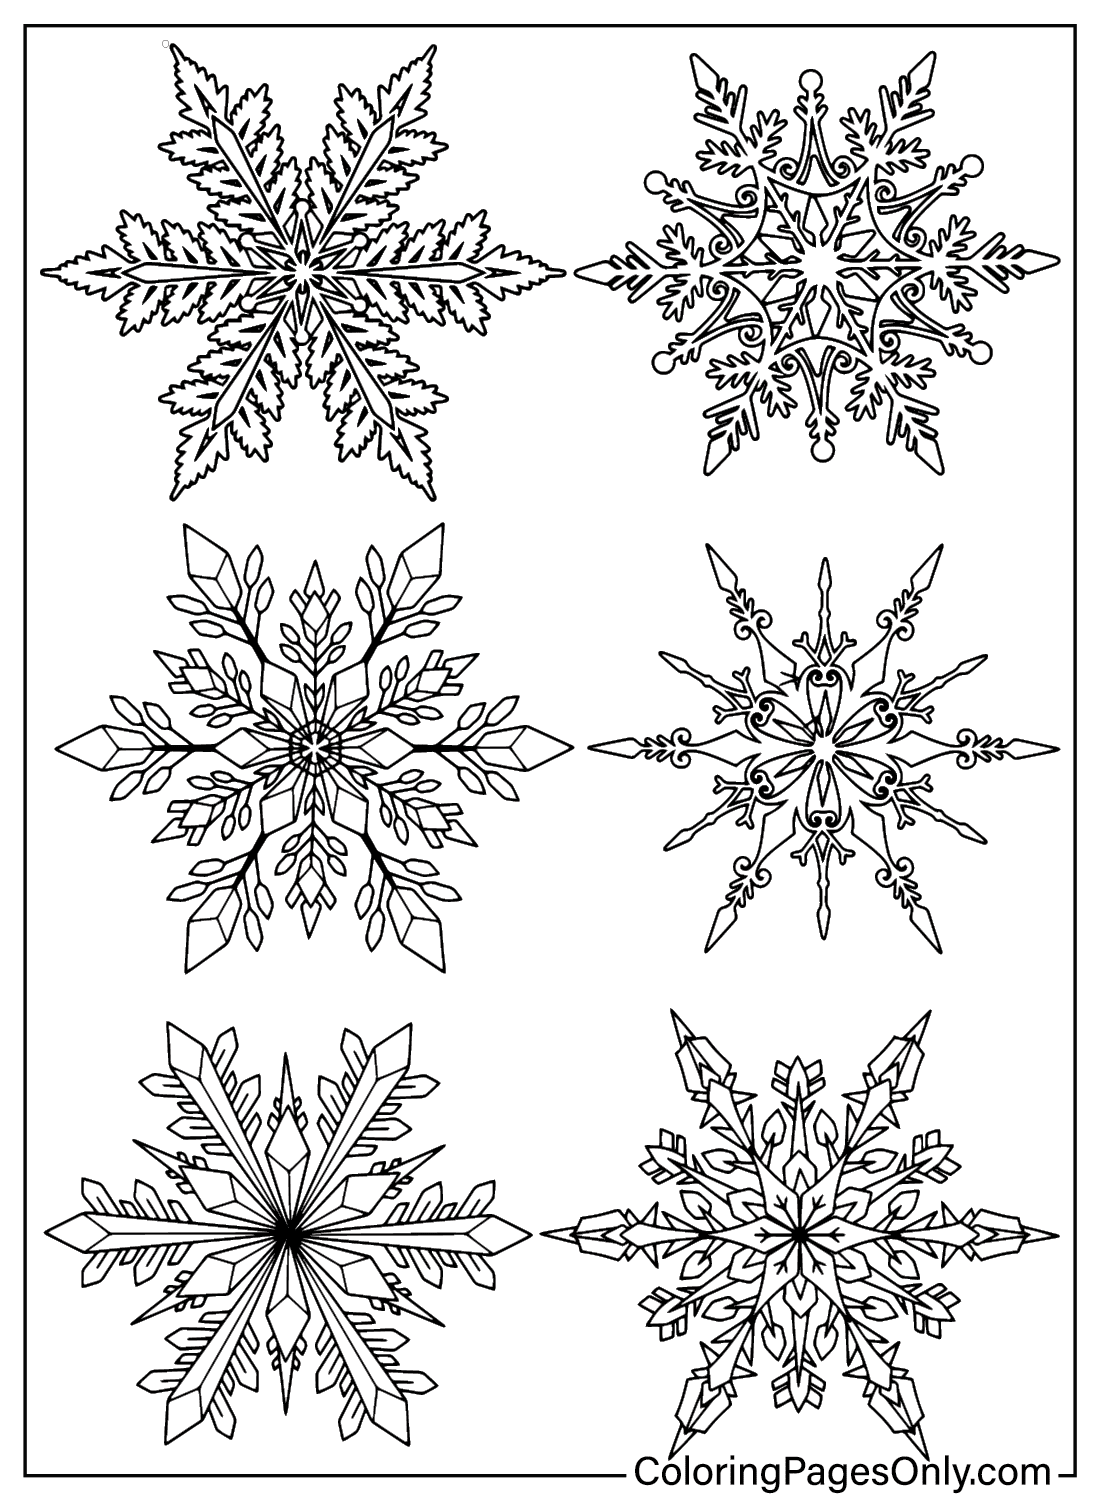 Páginas para colorear de copos de nieve para adultos de Snowflake